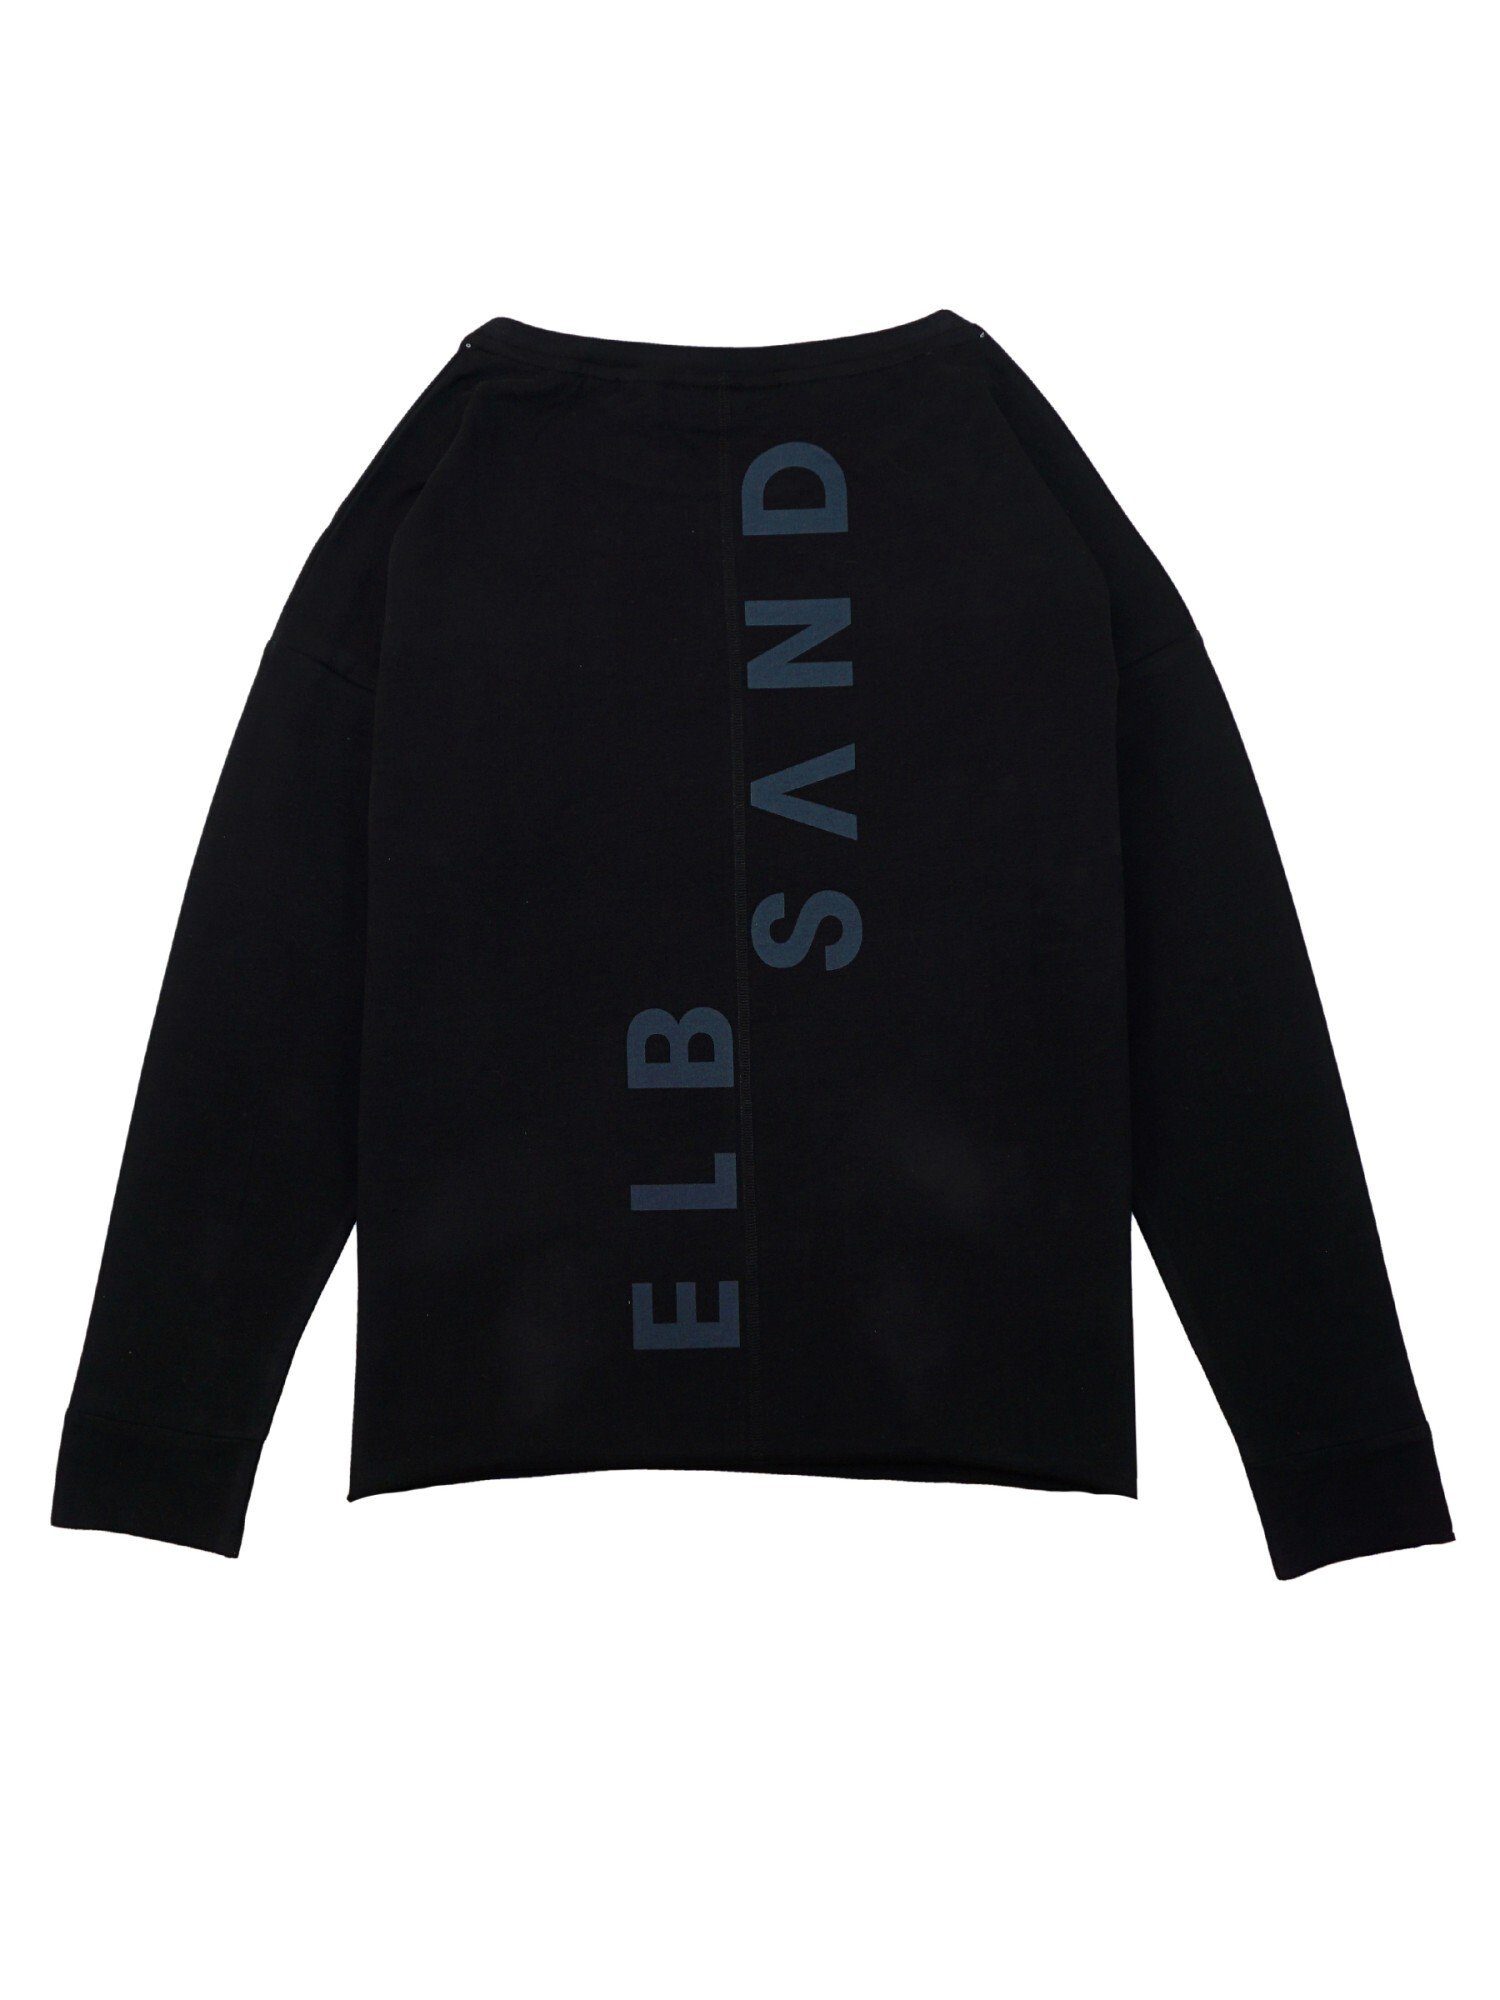 Sweatshirt Elbsand (1-tlg) mit Backprint Sweatshirt Riane Pullover vertikalem schwarz